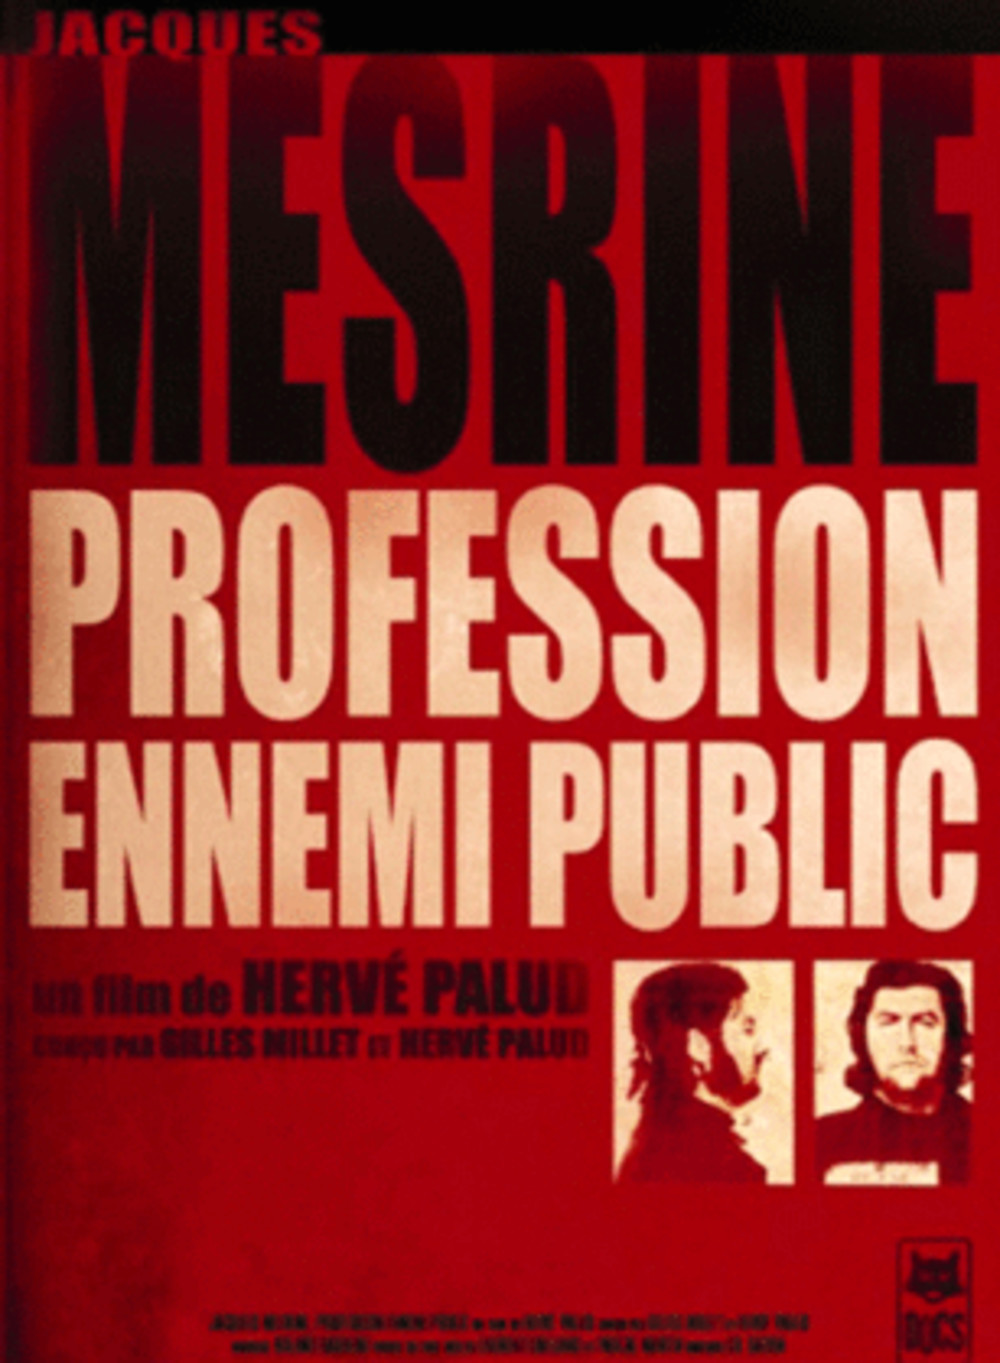 affiche du film Jacques Mesrine: profession ennemi public